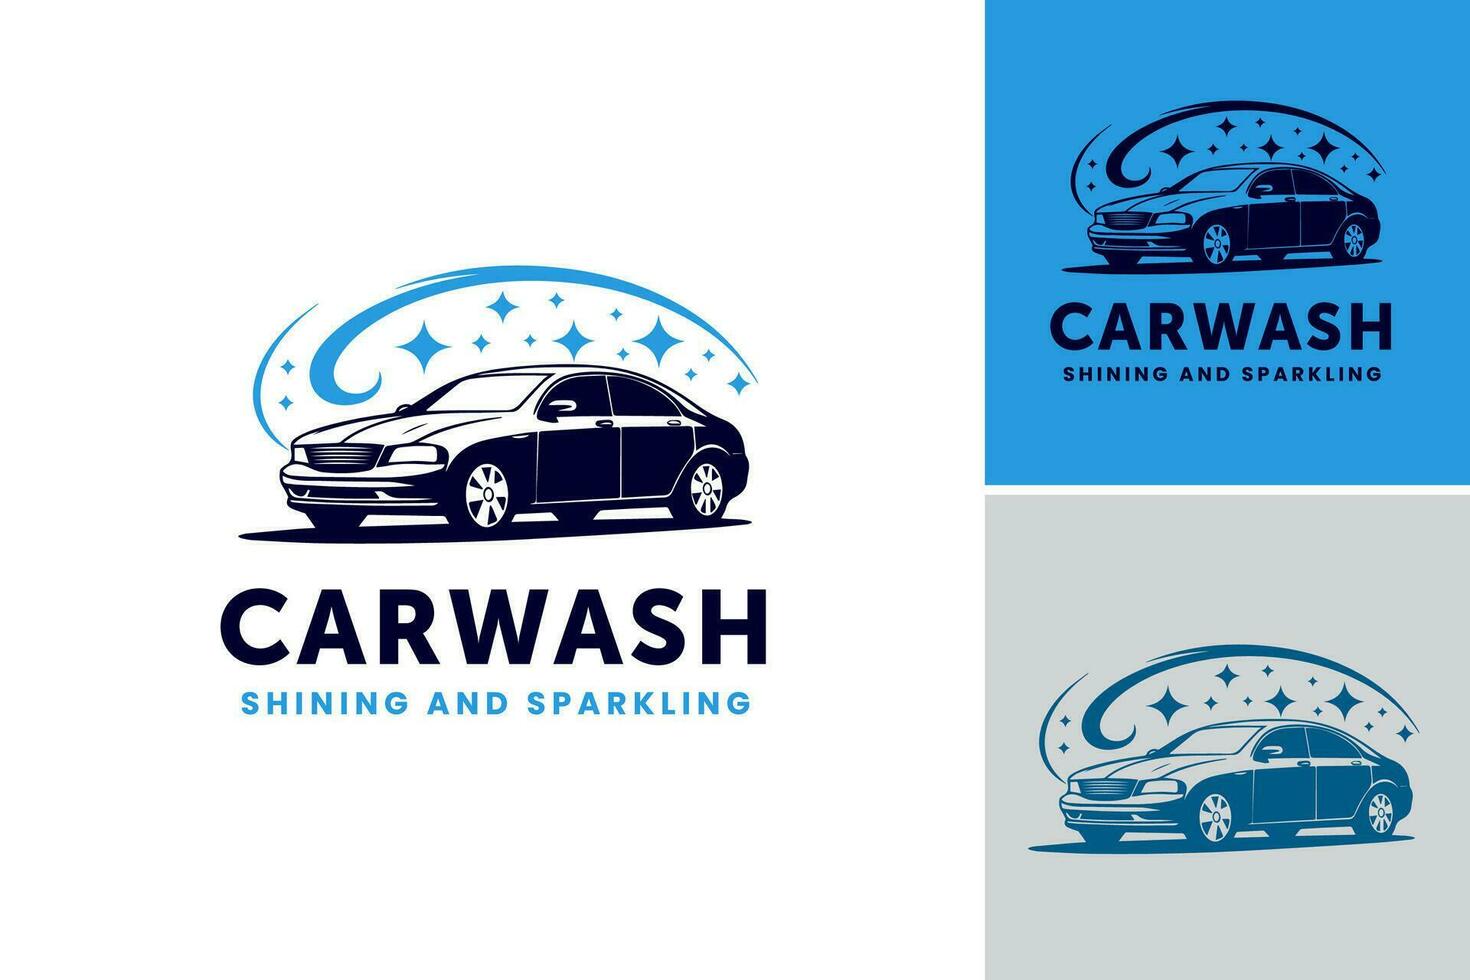 voiture laver logo est une conception atout adapté pour voiture laver entreprises, avec une unique et reconnaissable logo à représenter leur marque. vecteur